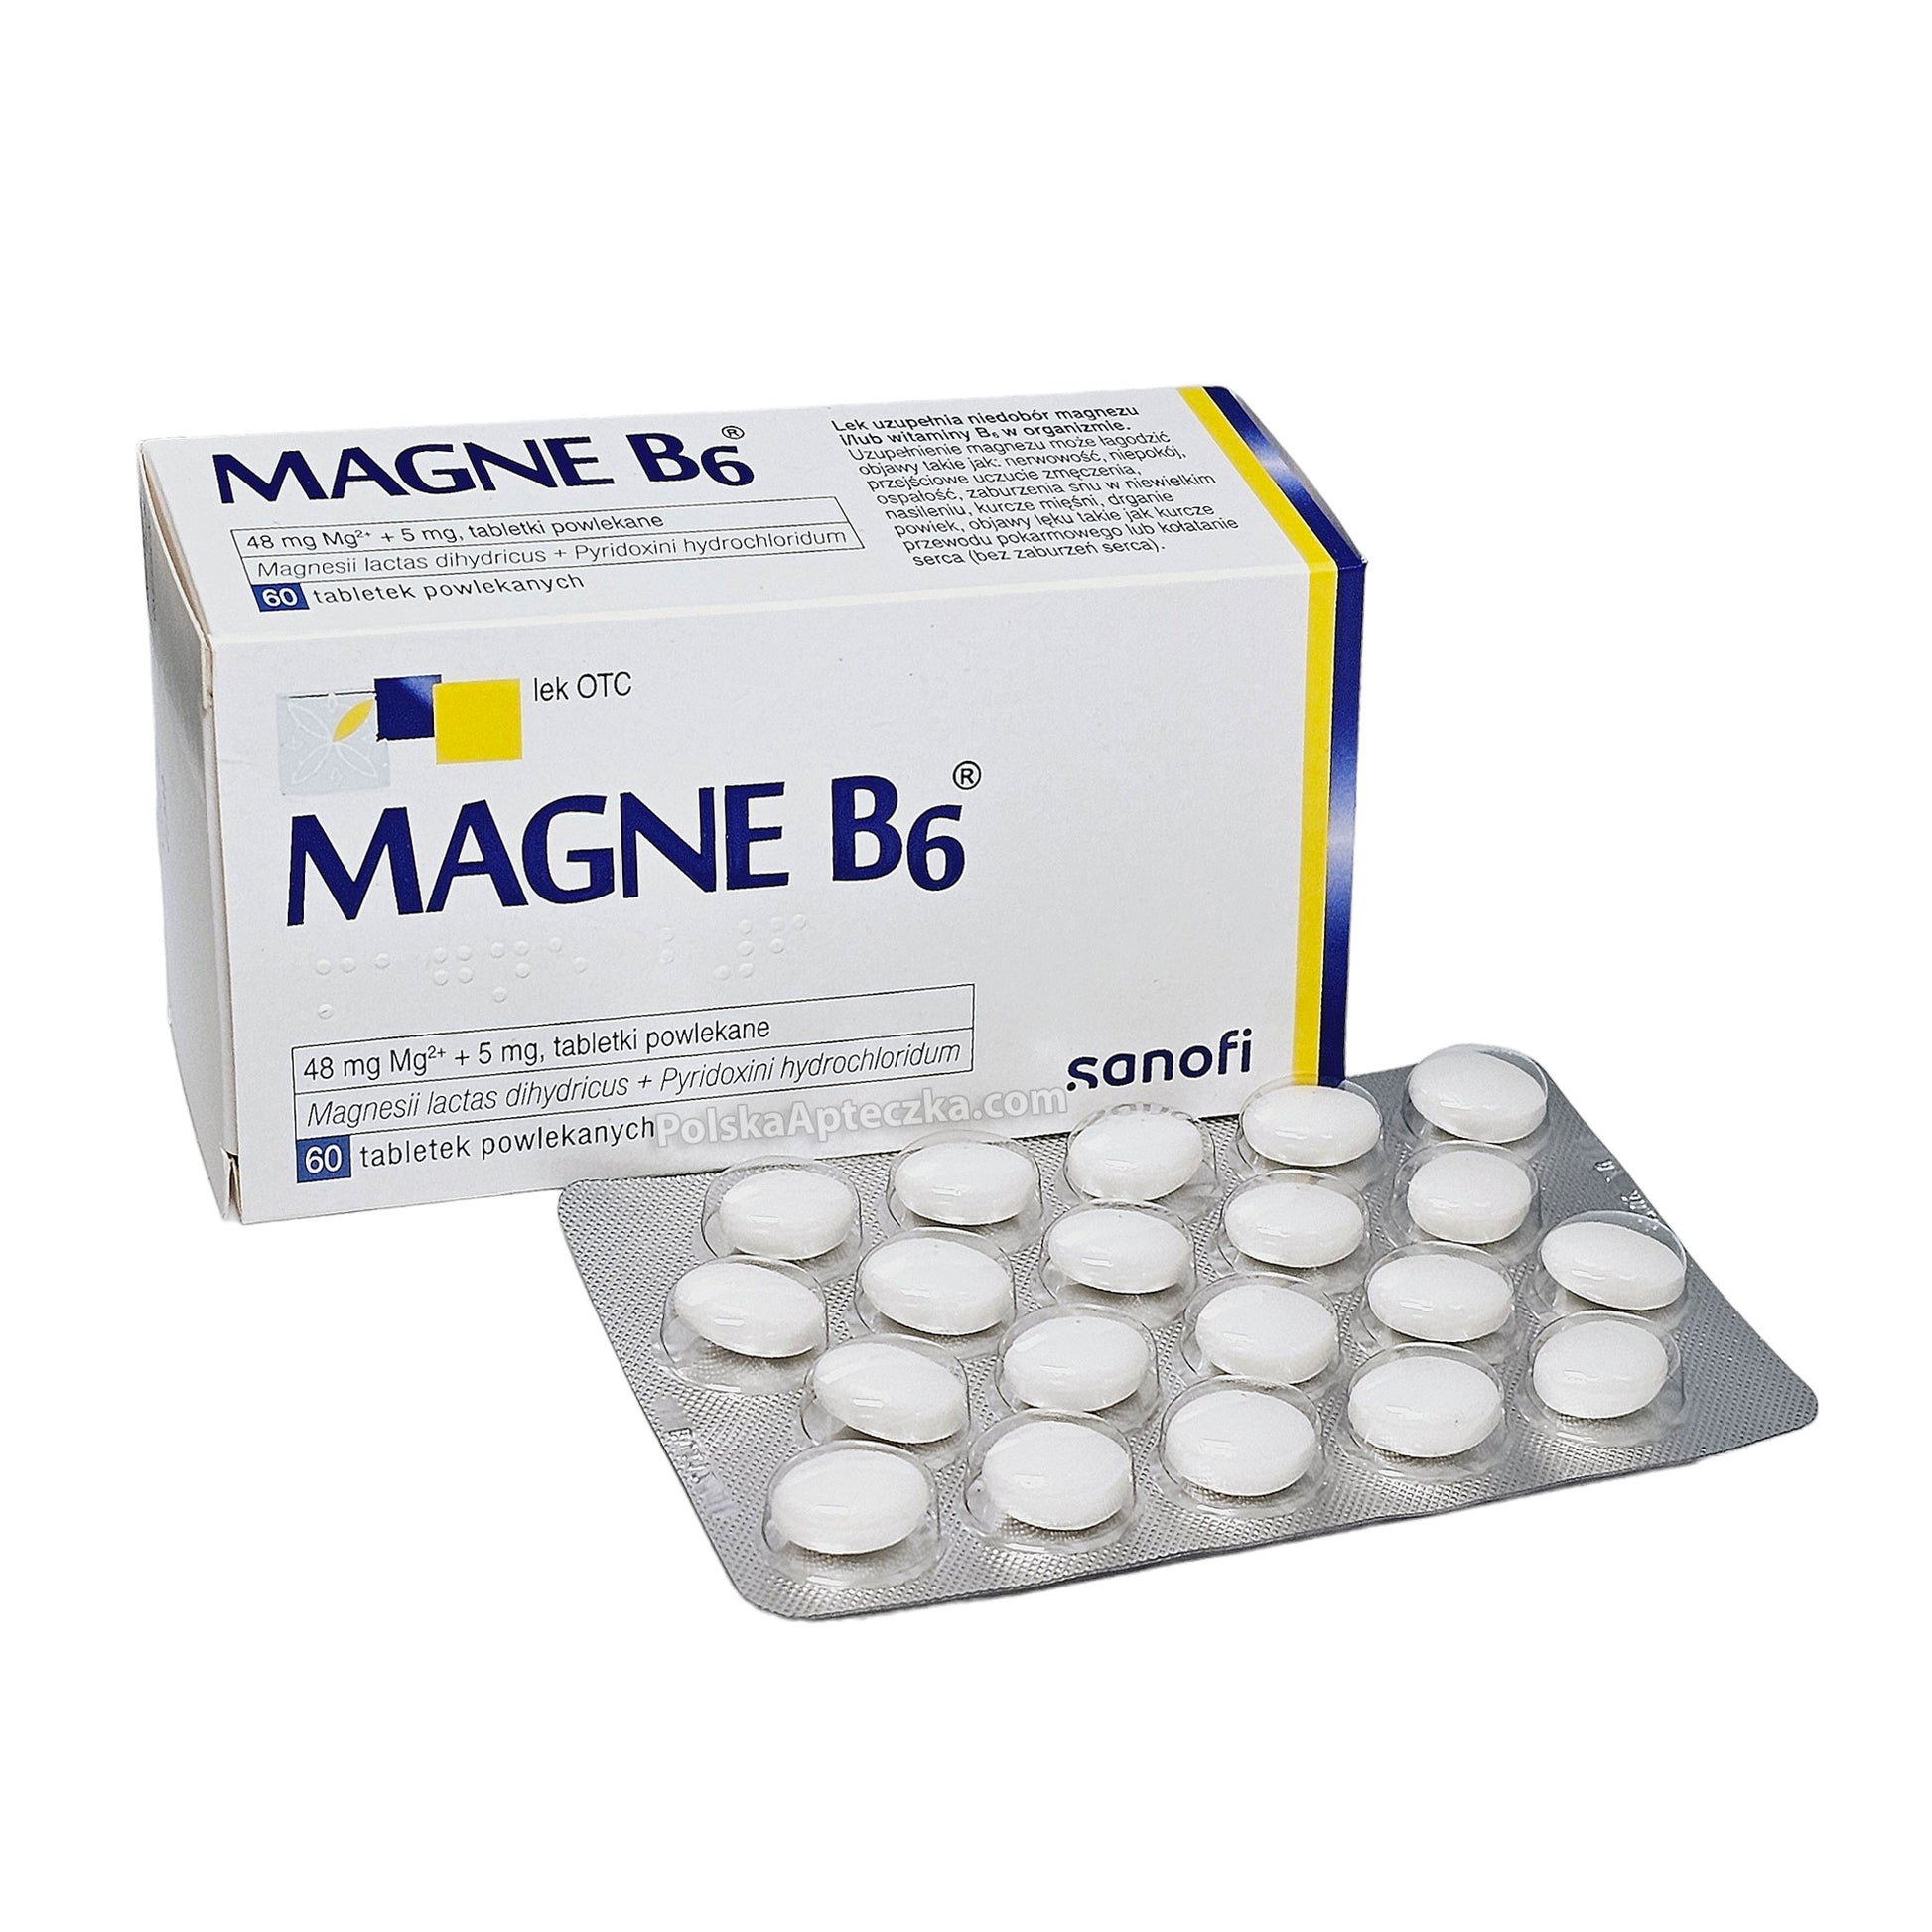 Magne B6 tablets